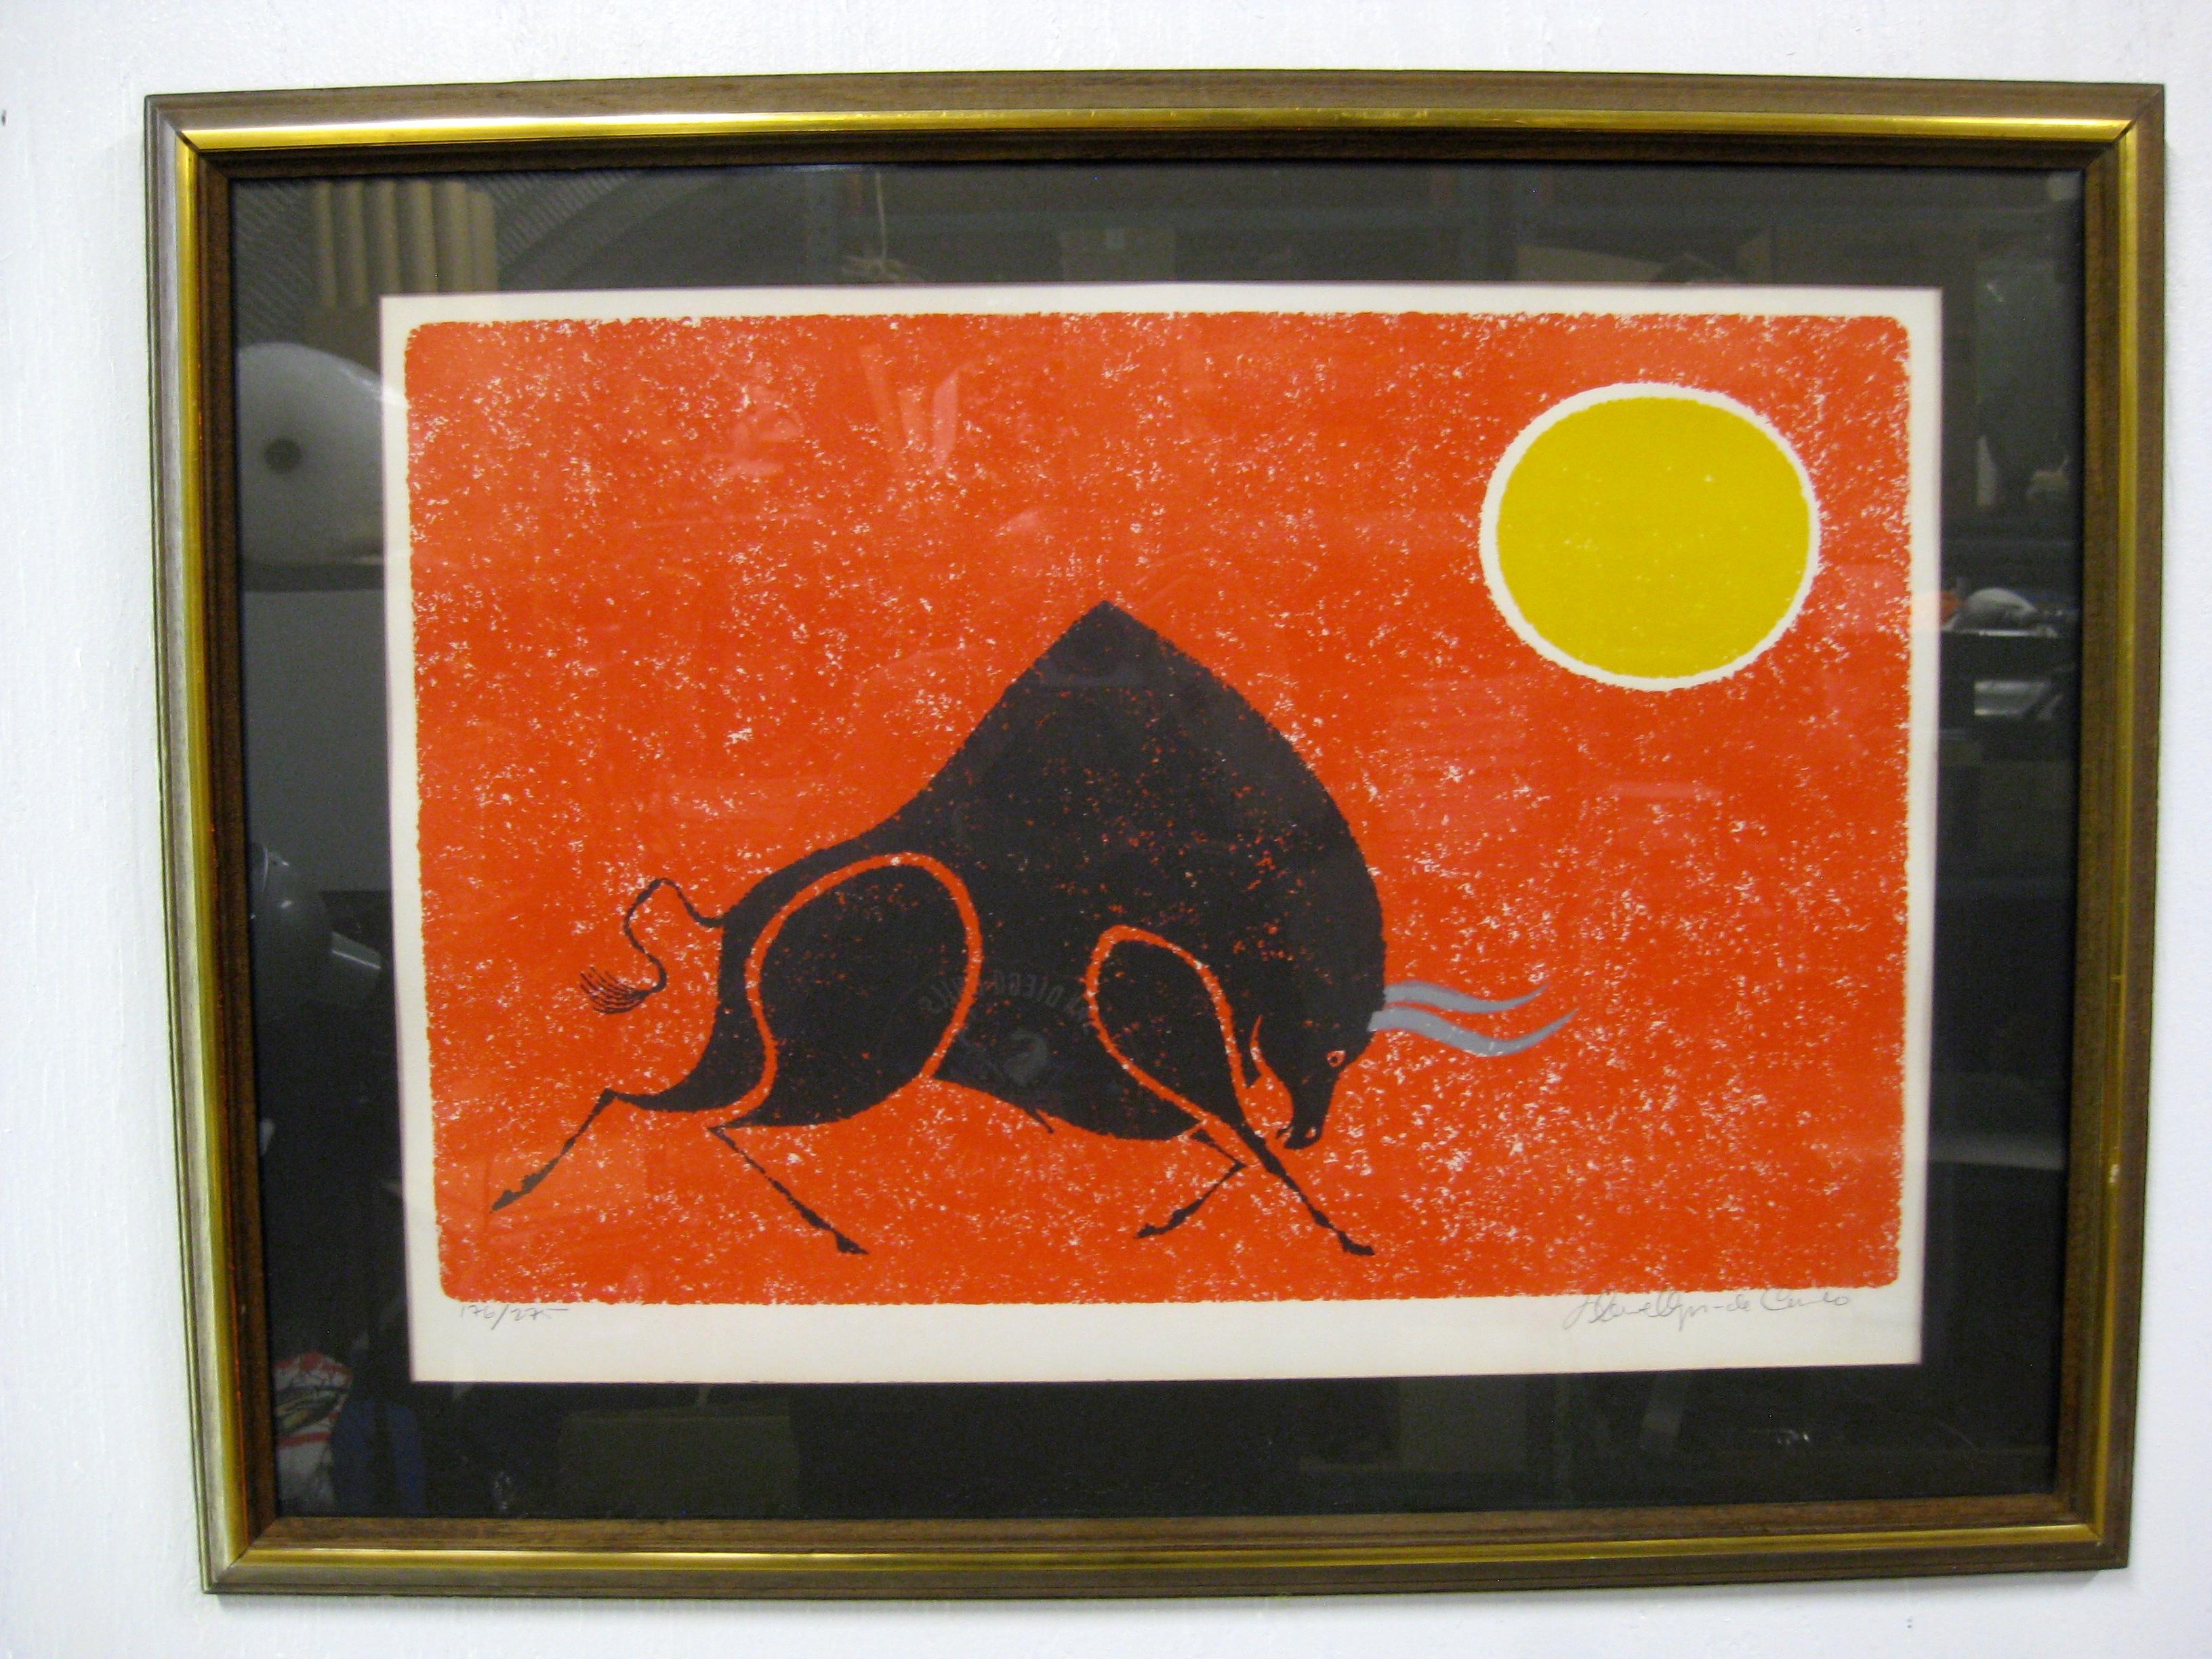 Merveilleuse lithographie abstraite signée et numérotée à la main par l'artiste répertorié Keith Llewellyn De Carlo, vers les années 1970. La lithographie abstraite représente une figurine de taureau colorée et un soleil. Couleurs vibrantes. Les